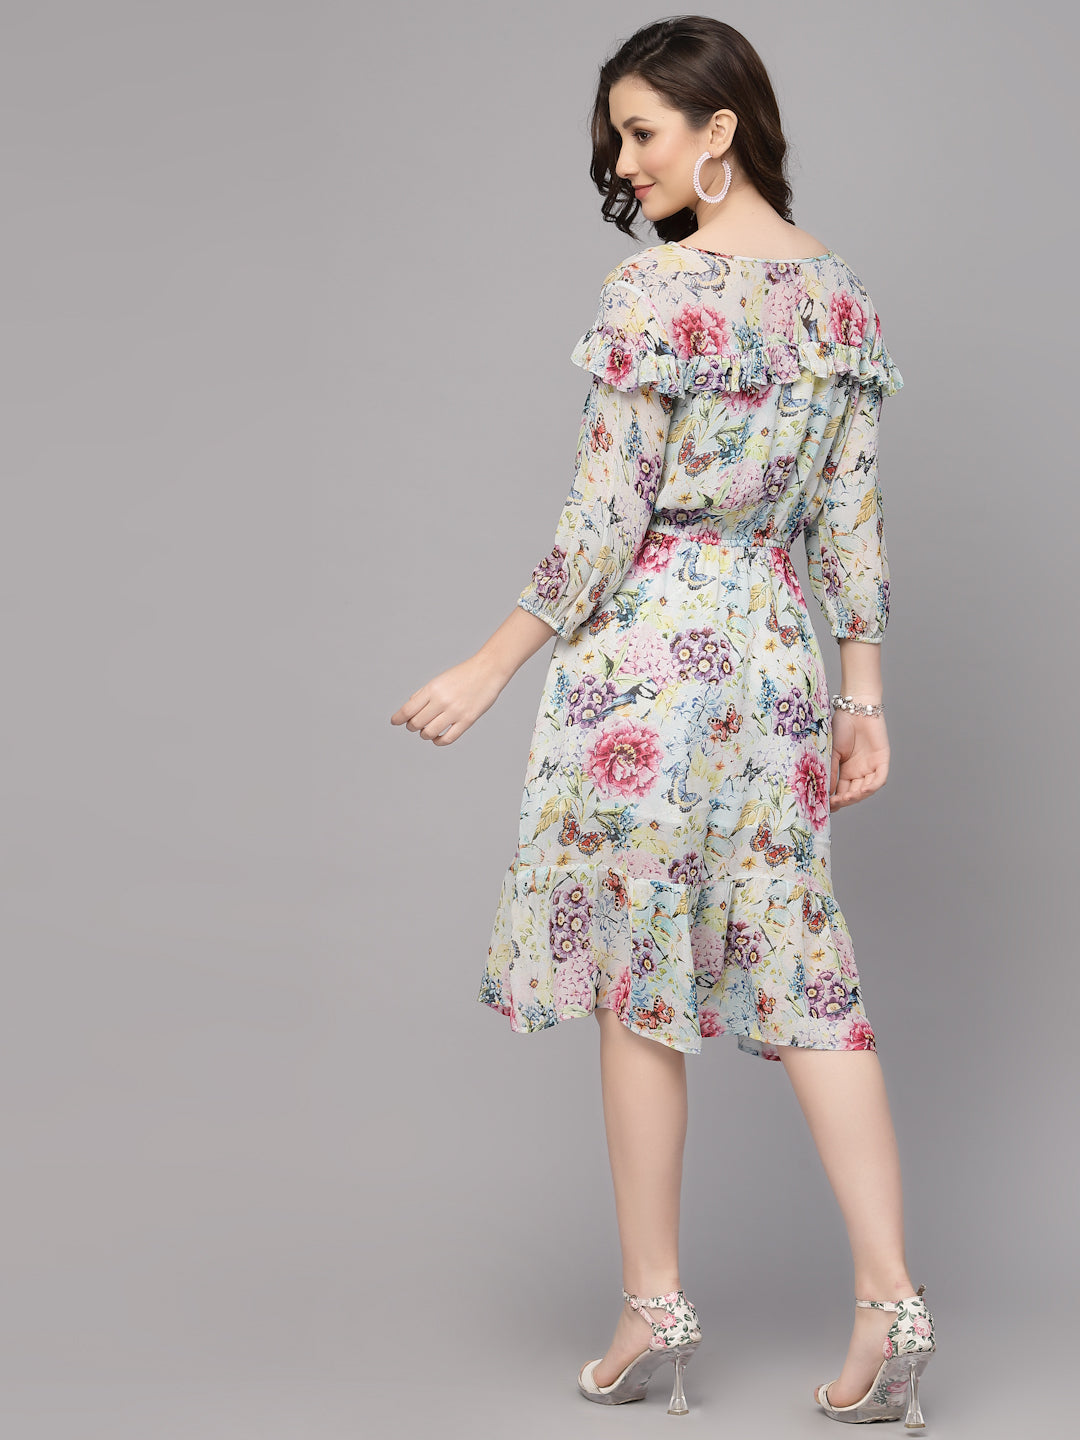 Valbone Women’s White Georgette Floral Printed Dress 3/4 Sleeves